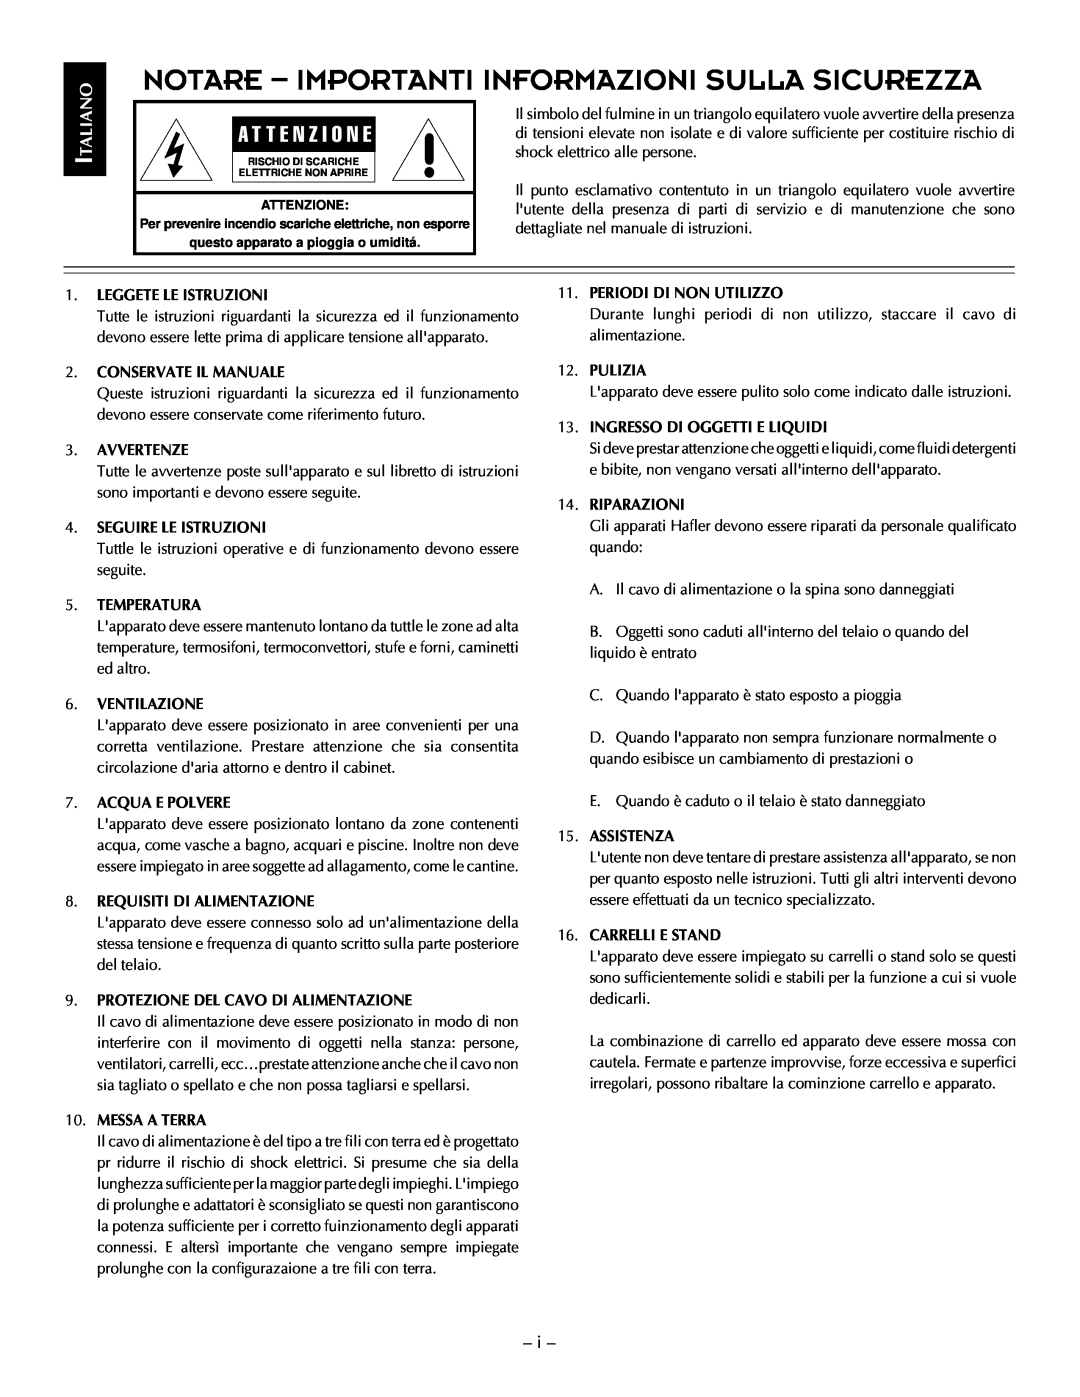 Hafler TRM12S, TRM10S manual Notare - Importanti Informazioni Sulla Sicurezza 